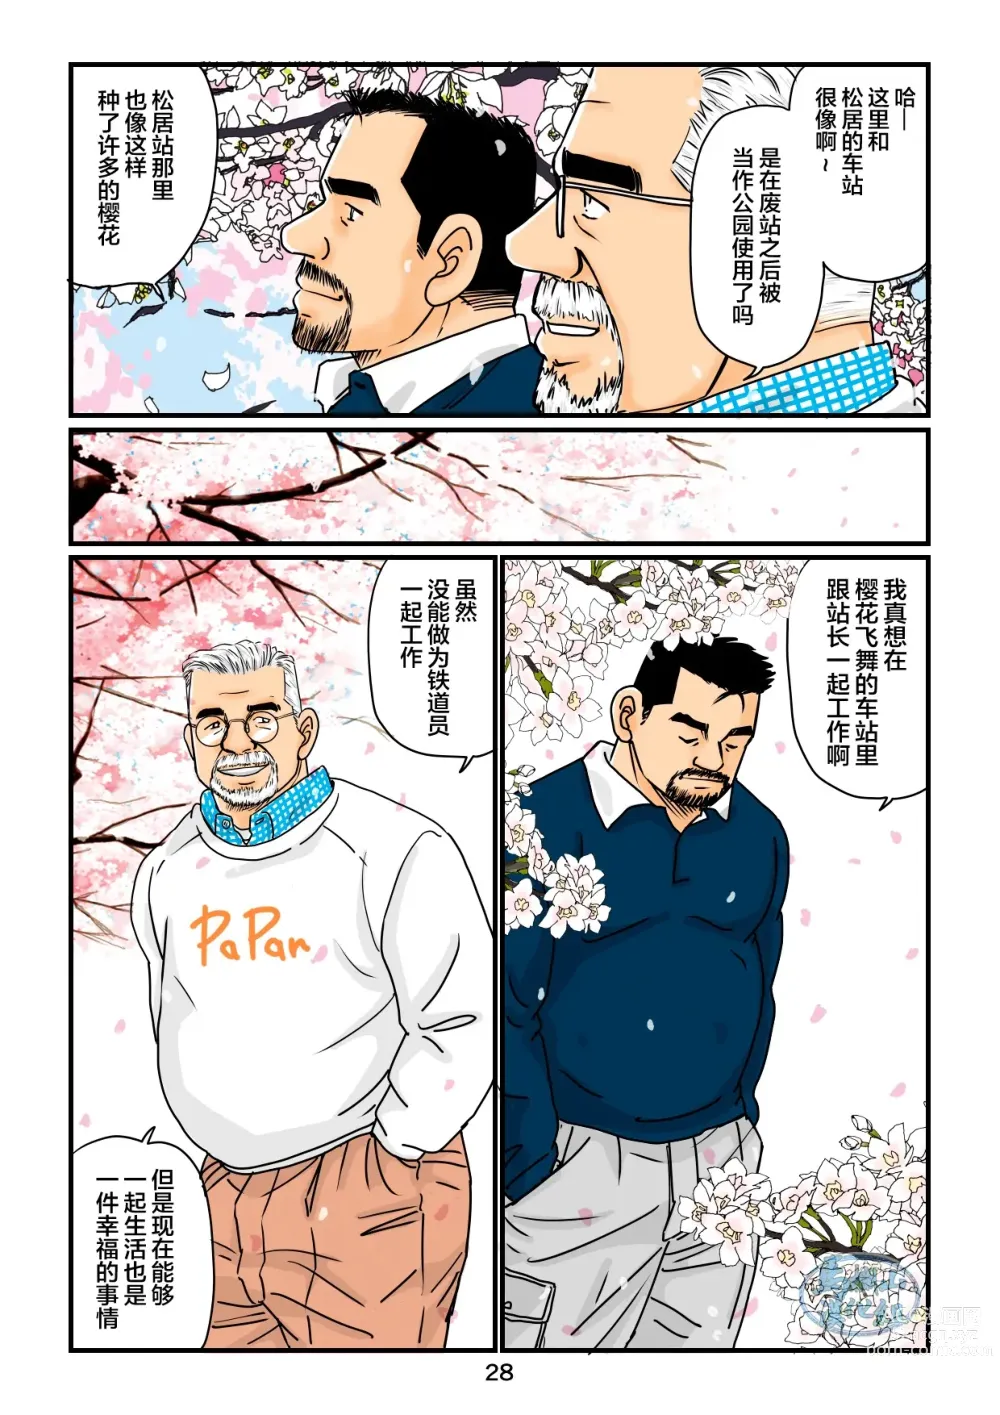 Page 28 of manga 「铁道员的浪漫」 第四回 站长和铁道员的前路